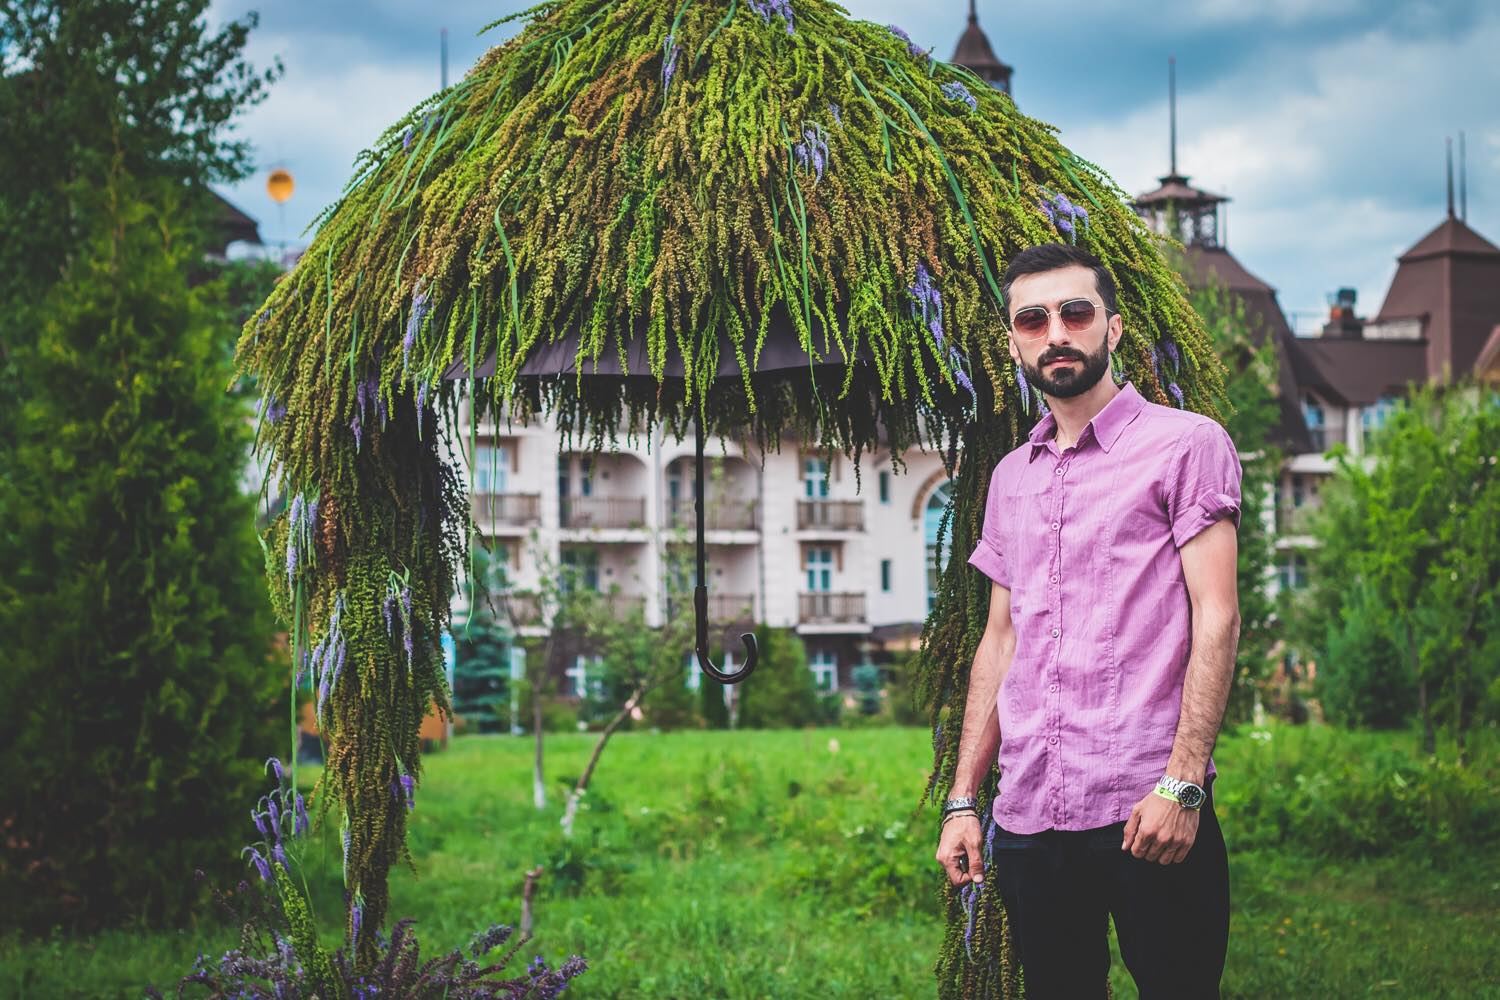 Цветочный шатер-зонтик азербайджанского флориста признан одним из лучших в России (ФОТО)